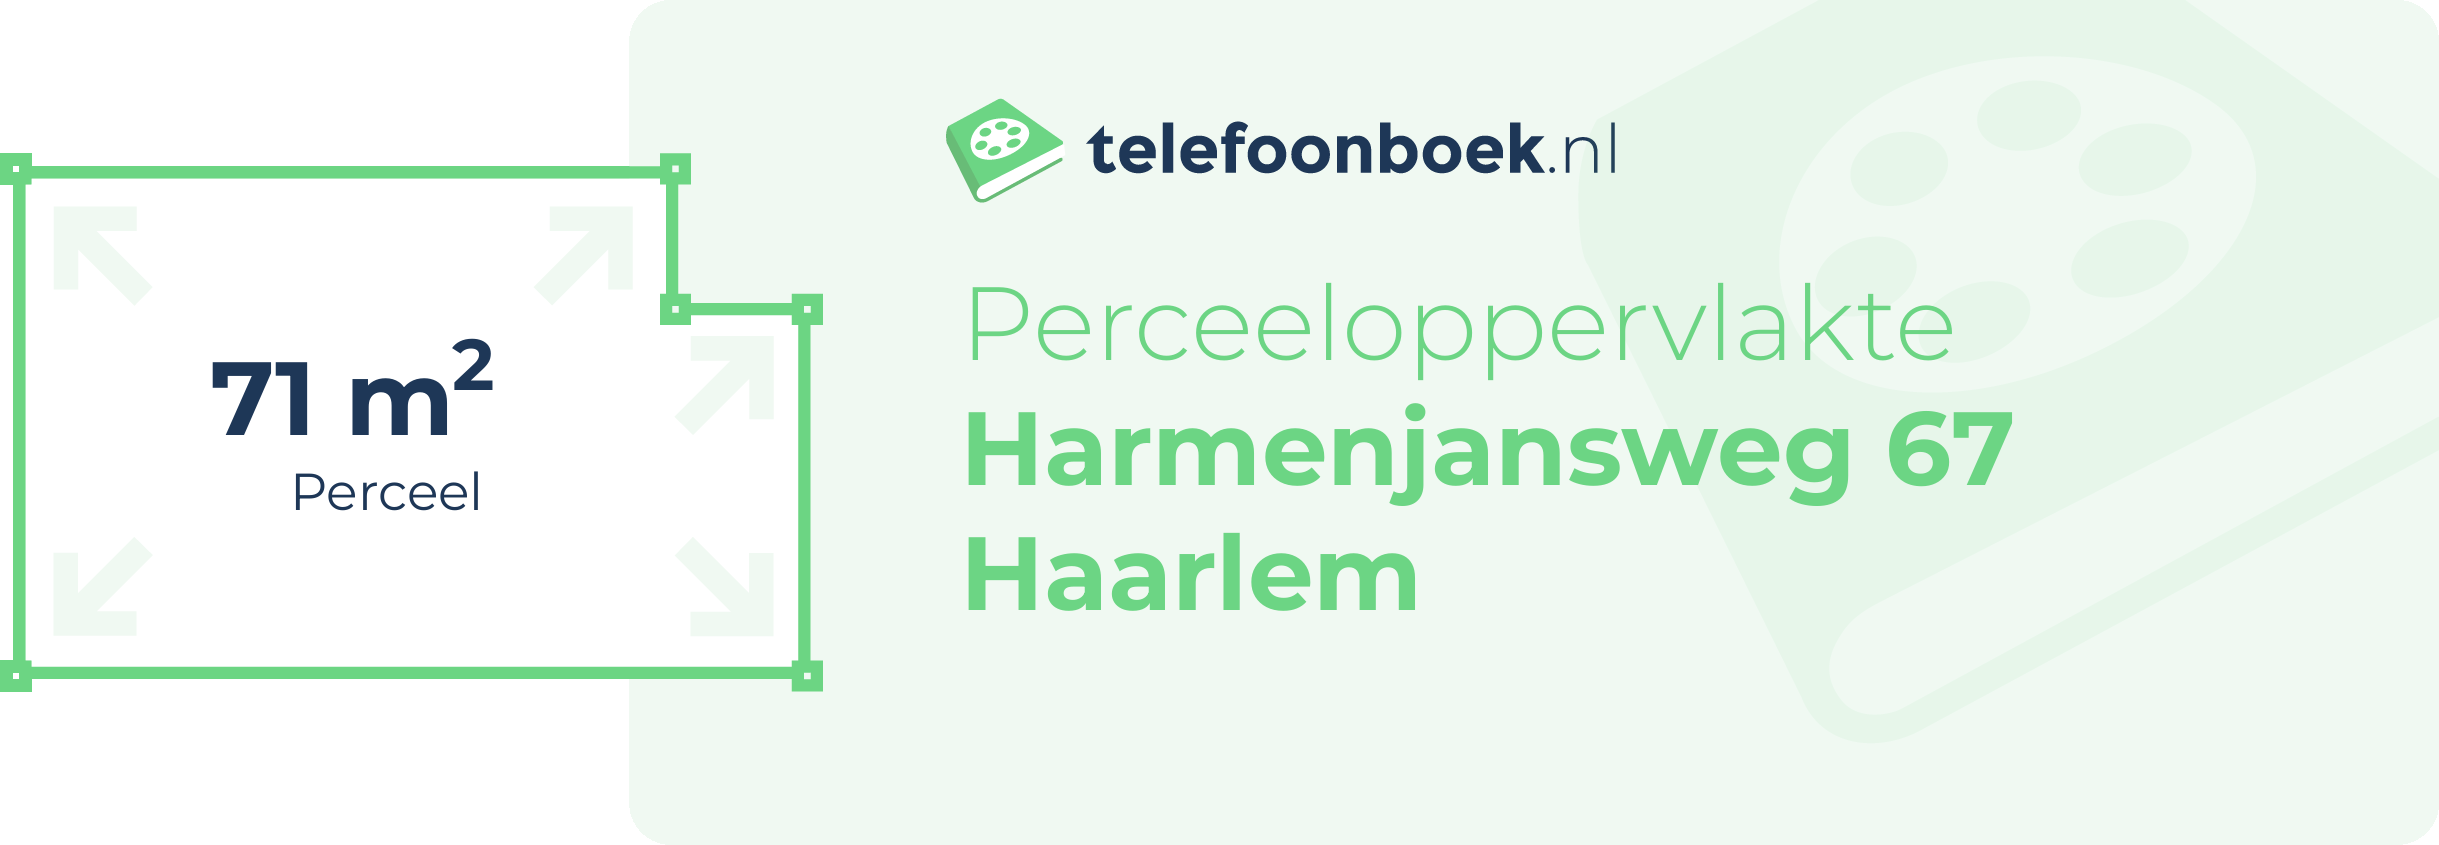 Perceeloppervlakte Harmenjansweg 67 Haarlem